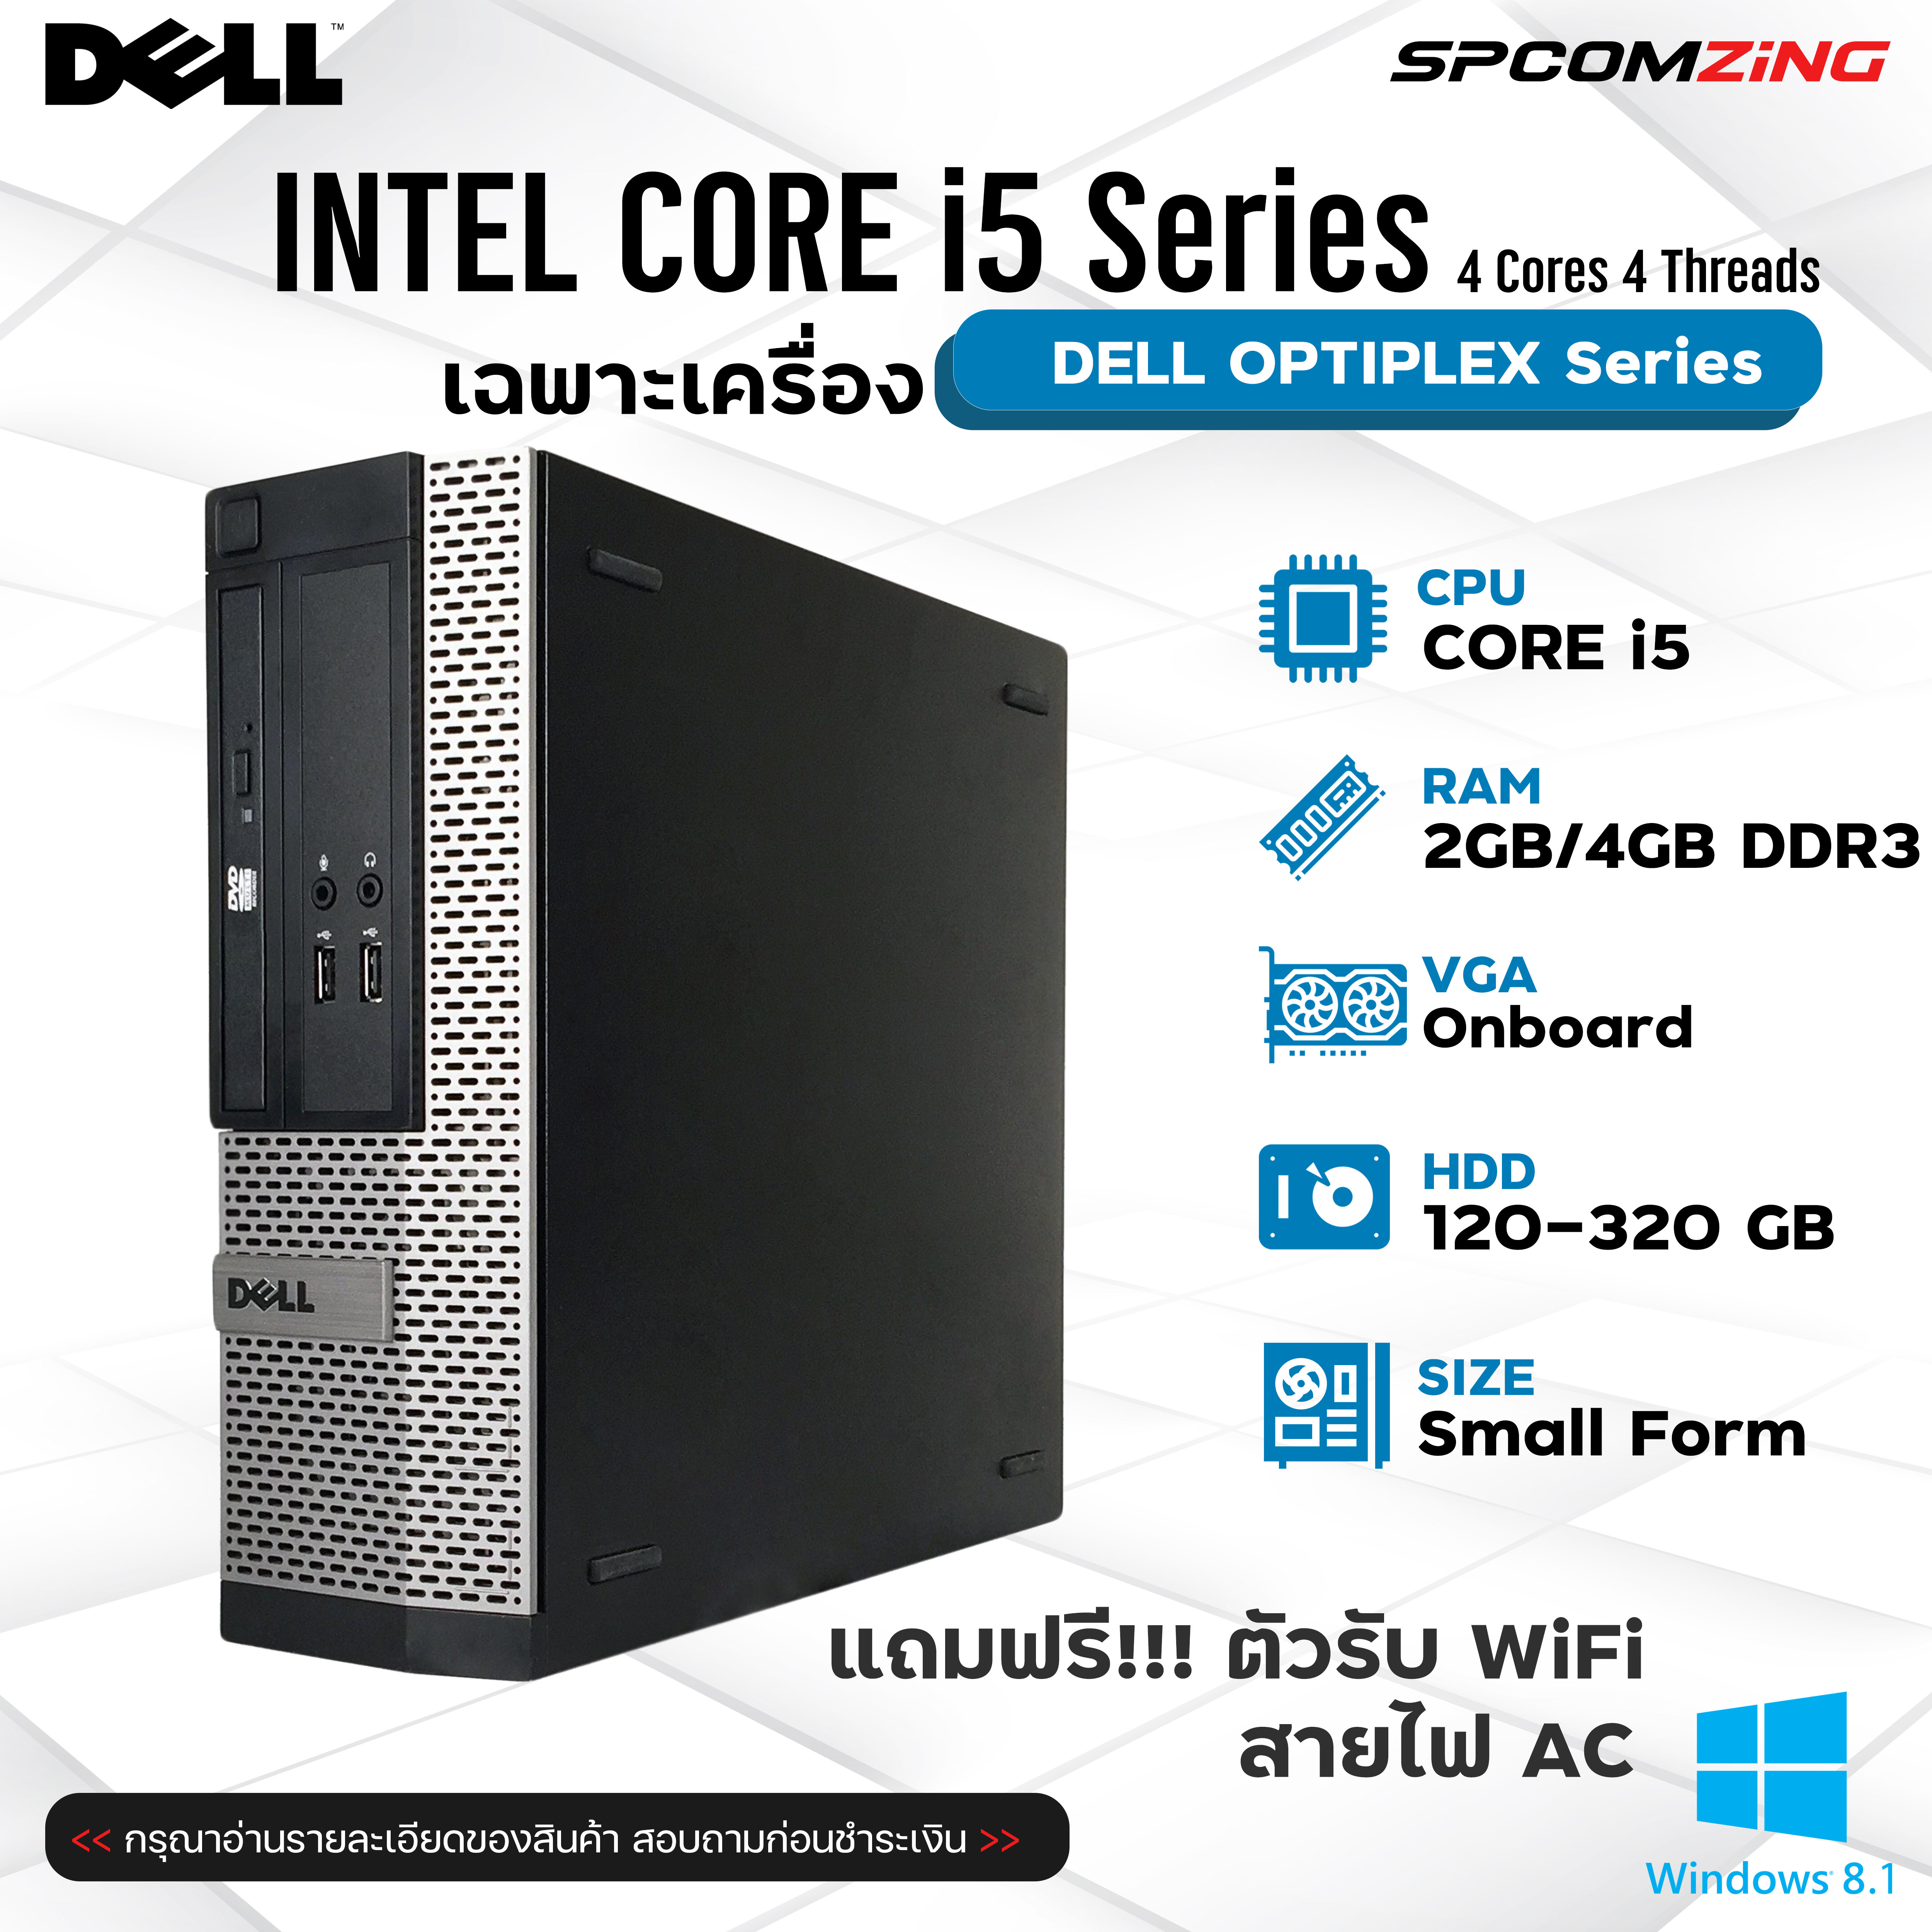 ภาพอธิบายเพิ่มเติมของ [COMZING] คอมพิวเตอร์ มือสองราคาถูก พร้อมใช้งาน Dell Optiplex Core i5 เล่นอินเตอร์เน็ต ทำงานพิมพ์เอกสาร ดูหนัง